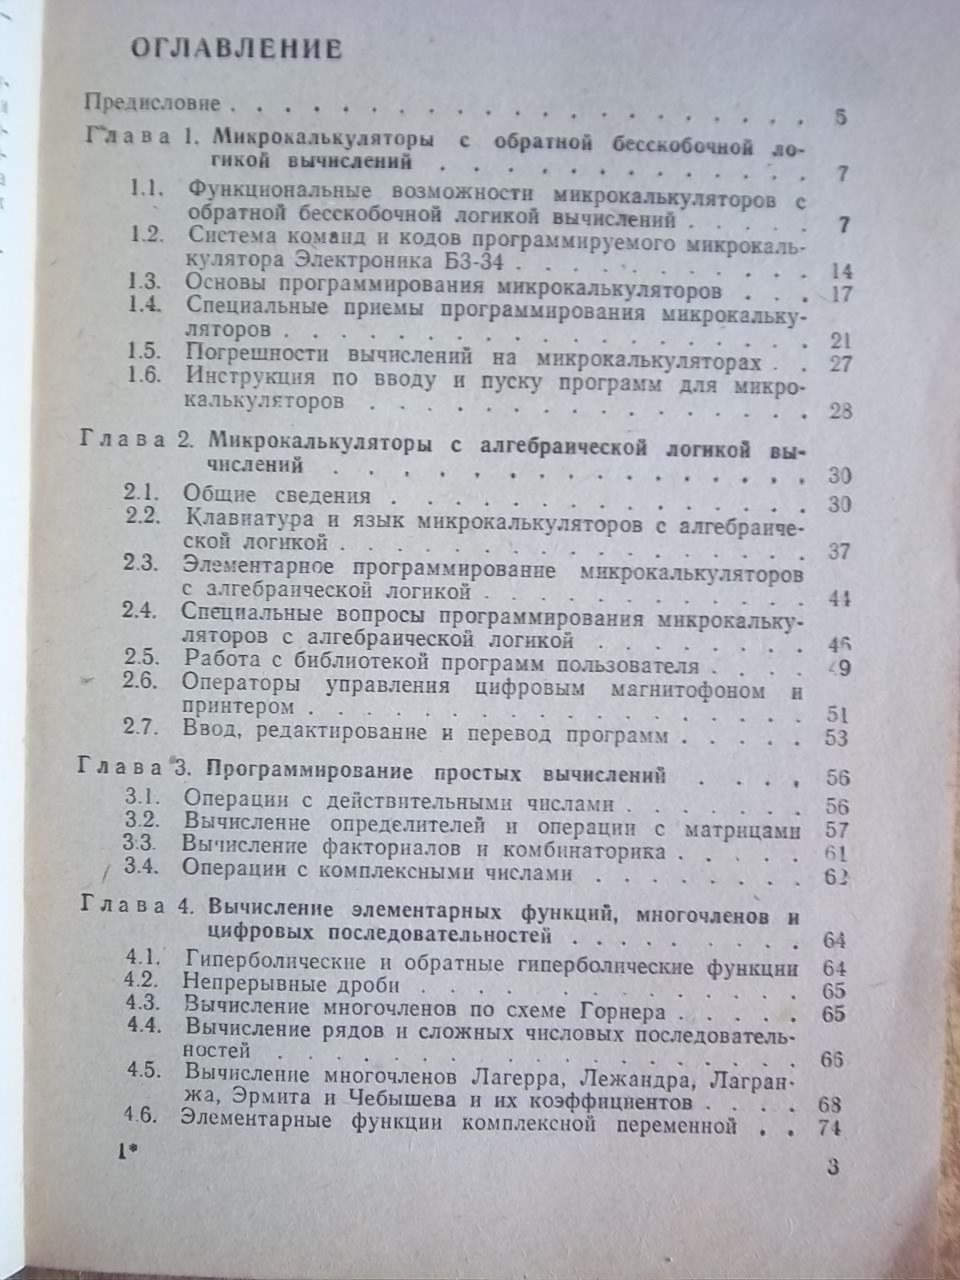 Дьяконов В.	Справочник по расчетам на микрокалькуляторах. 1